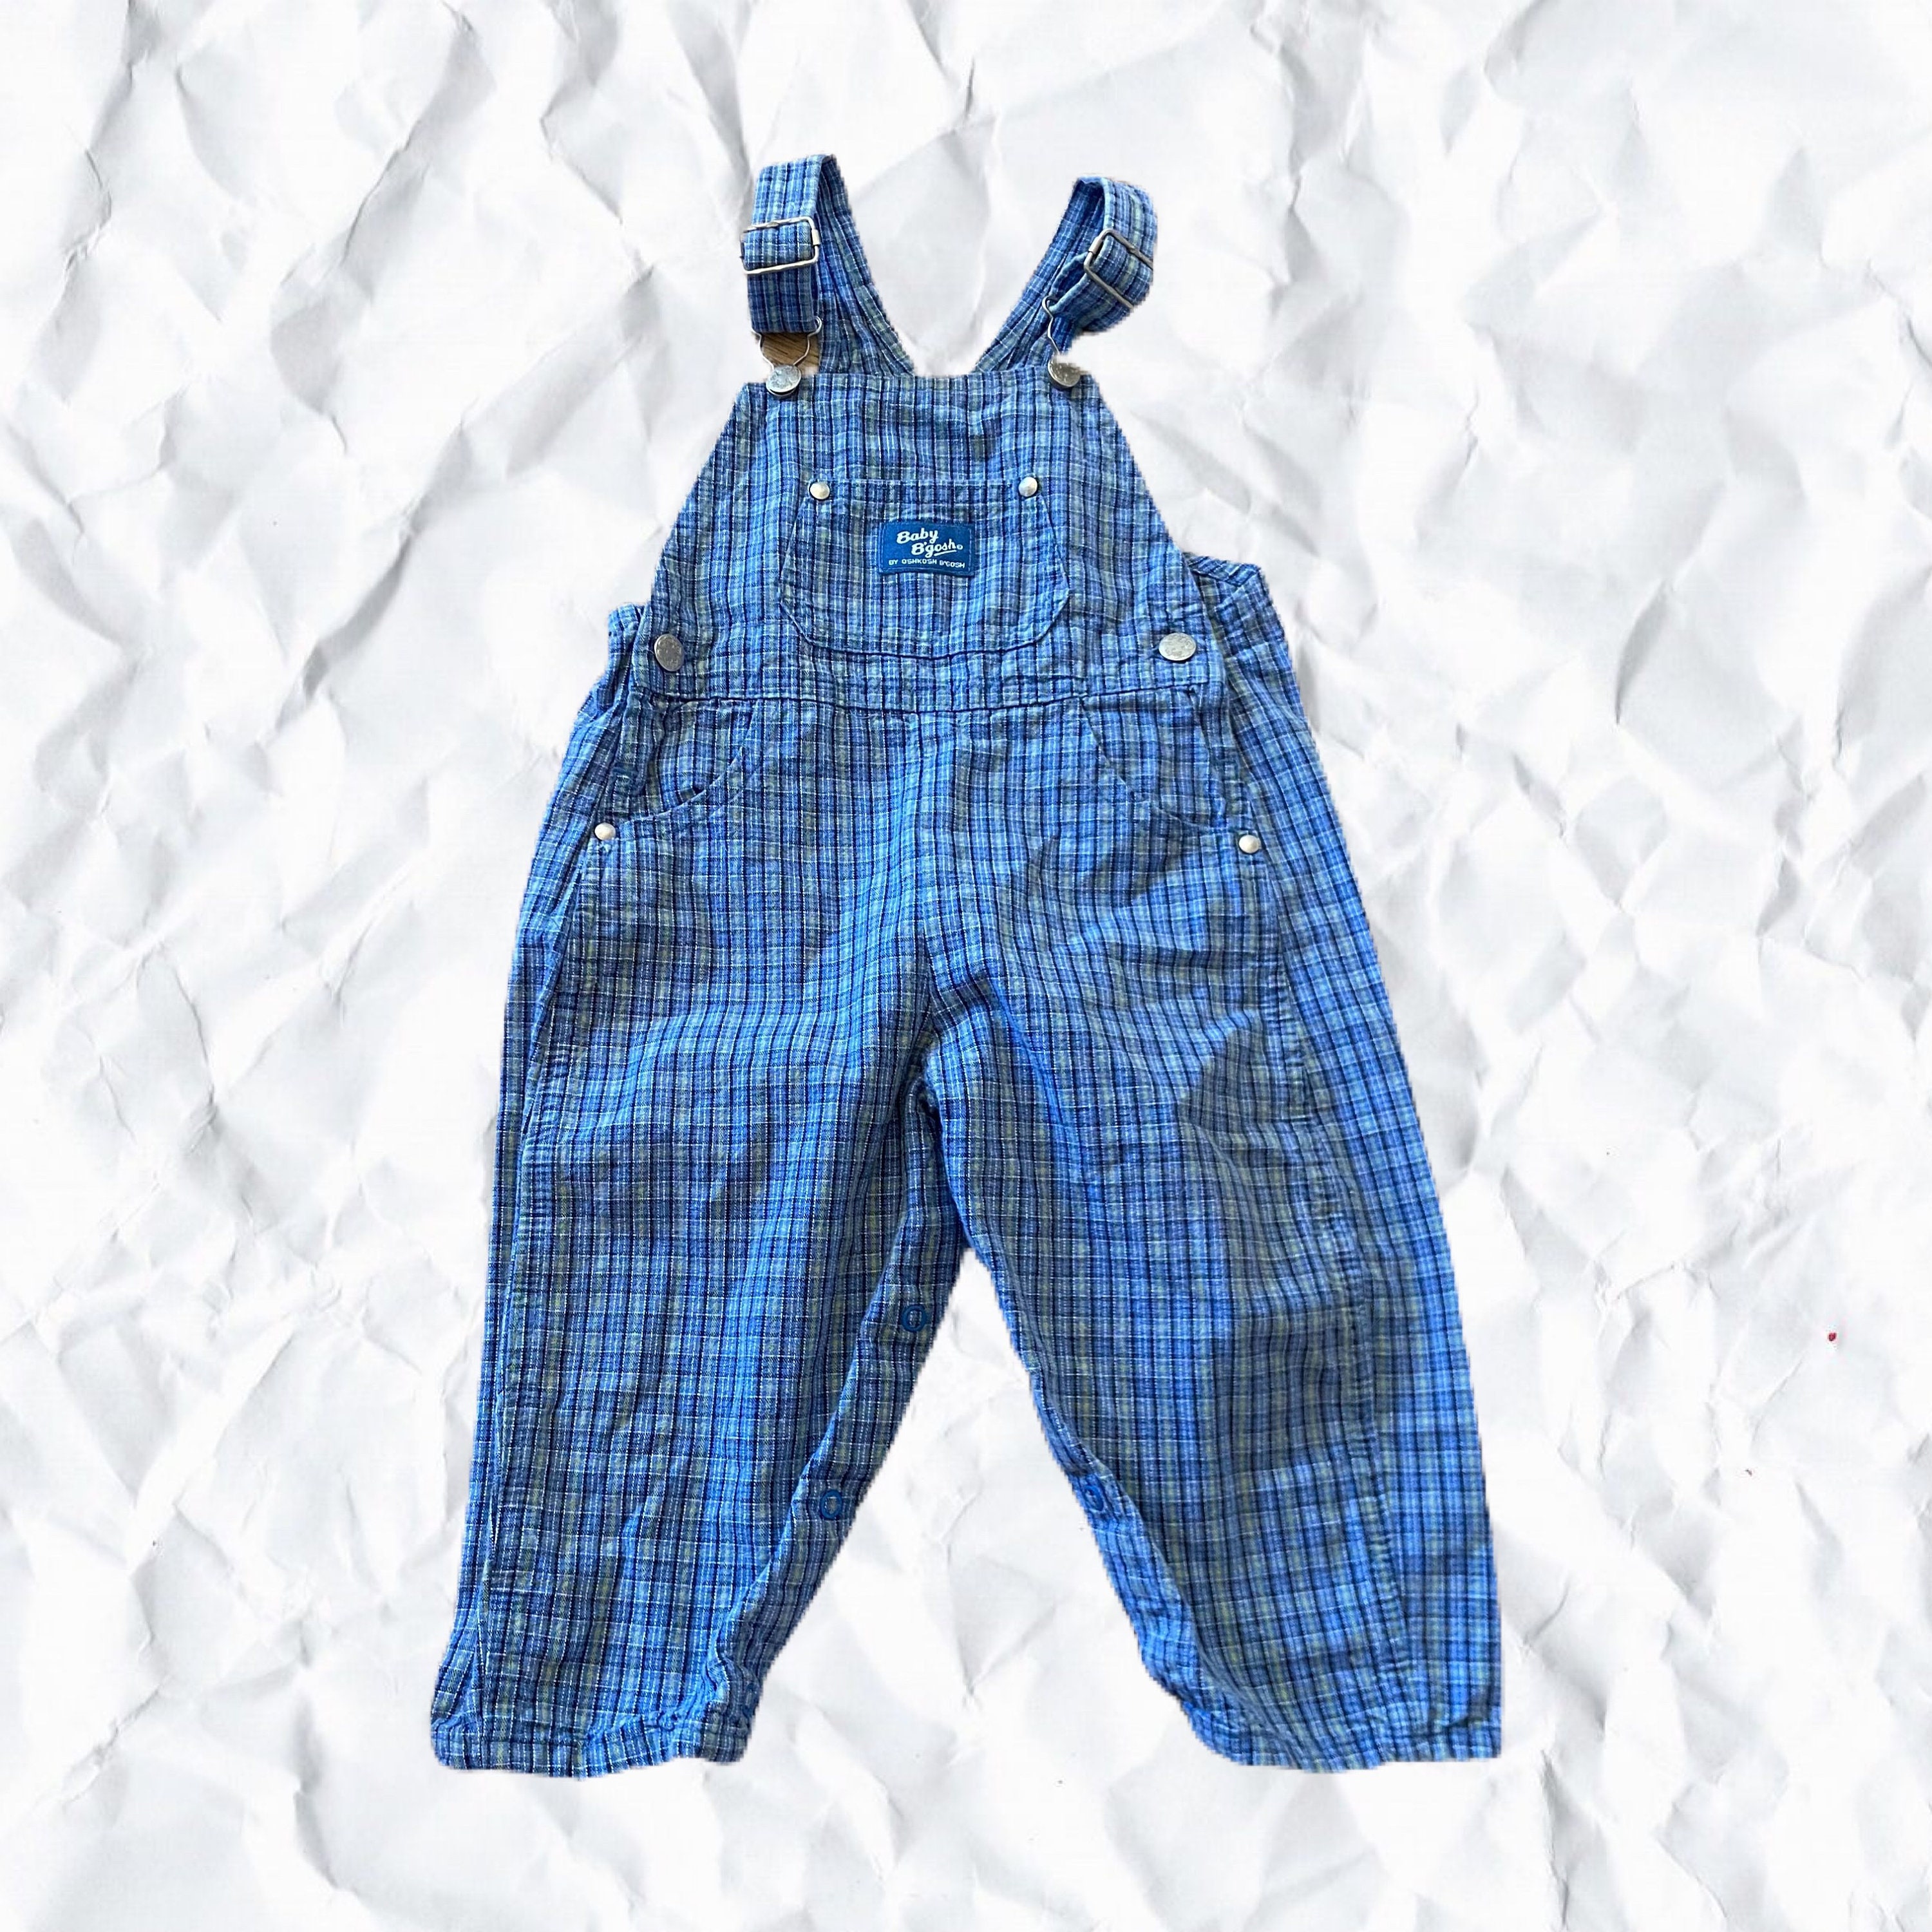 Perfectamente desgastado COLECCIONABLE Vintage OshKosh Jeans Baby Size 12M Ropa Ropa unisex para niños Vaqueros 